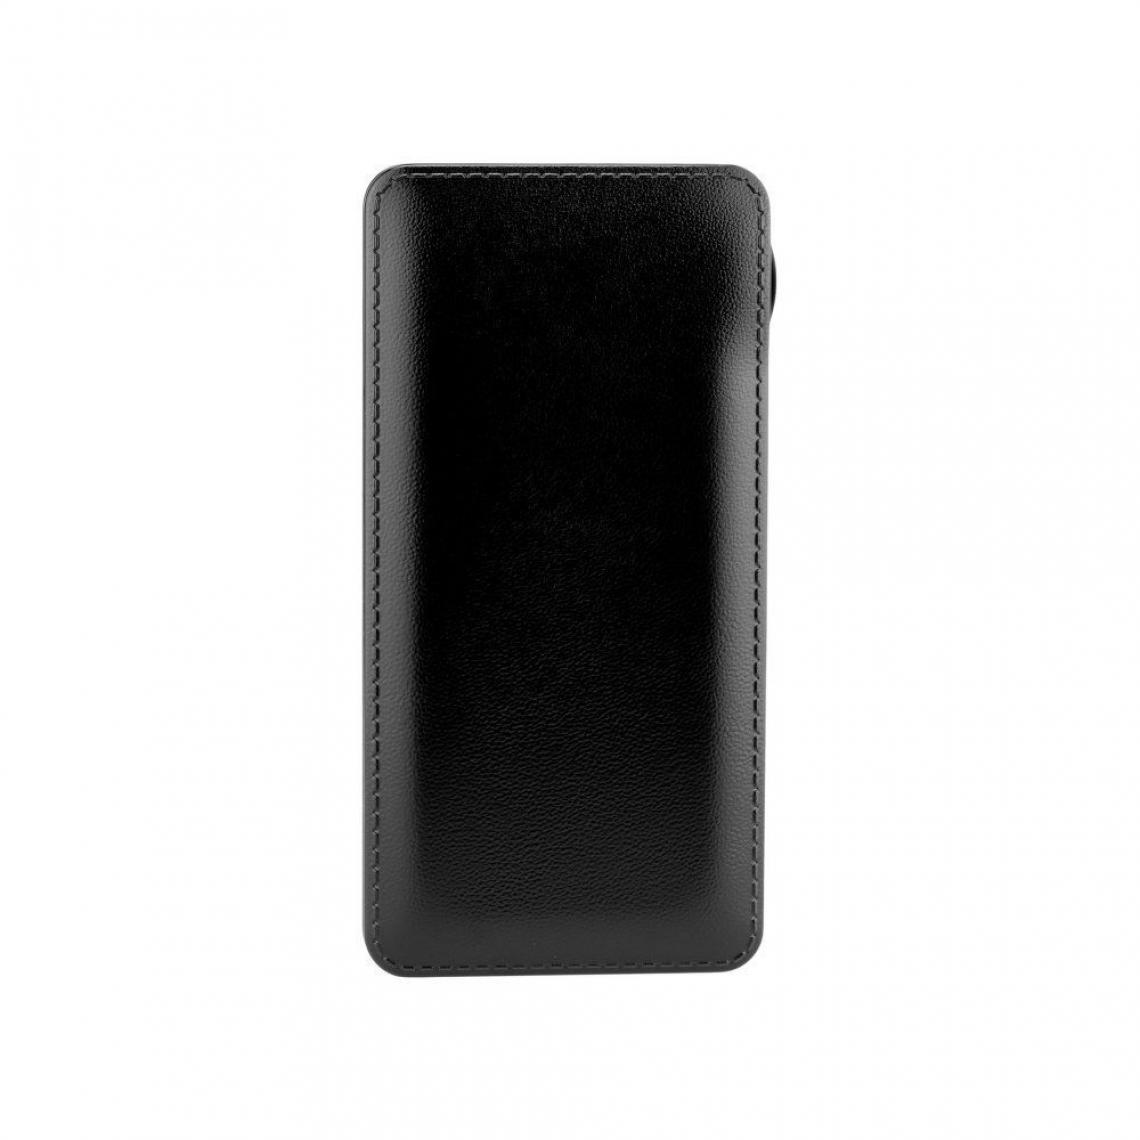 Ozzzo - Chargeur batterie externe 20000 mAh powerbank ozzzo noir pour UMIDIGI F1 - Autres accessoires smartphone